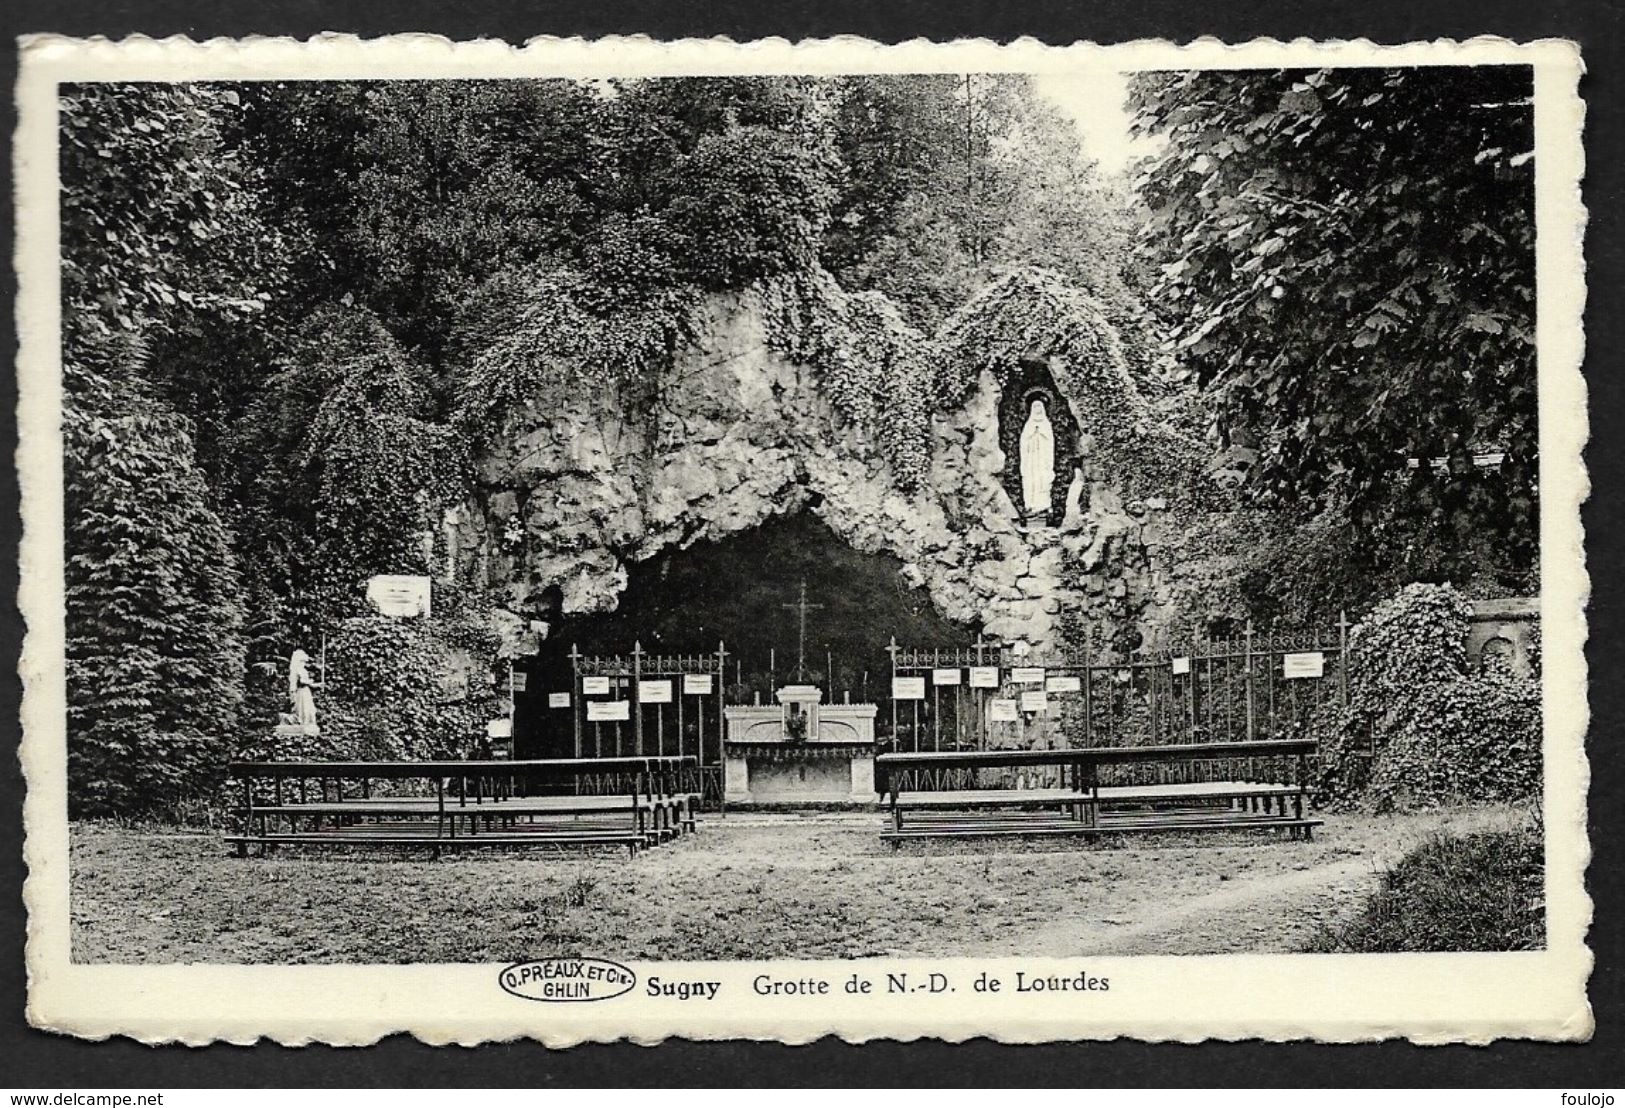 Carte Vue De Sugny - Grotte ND De Lourdes (Lot 642) - Vresse-sur-Semois